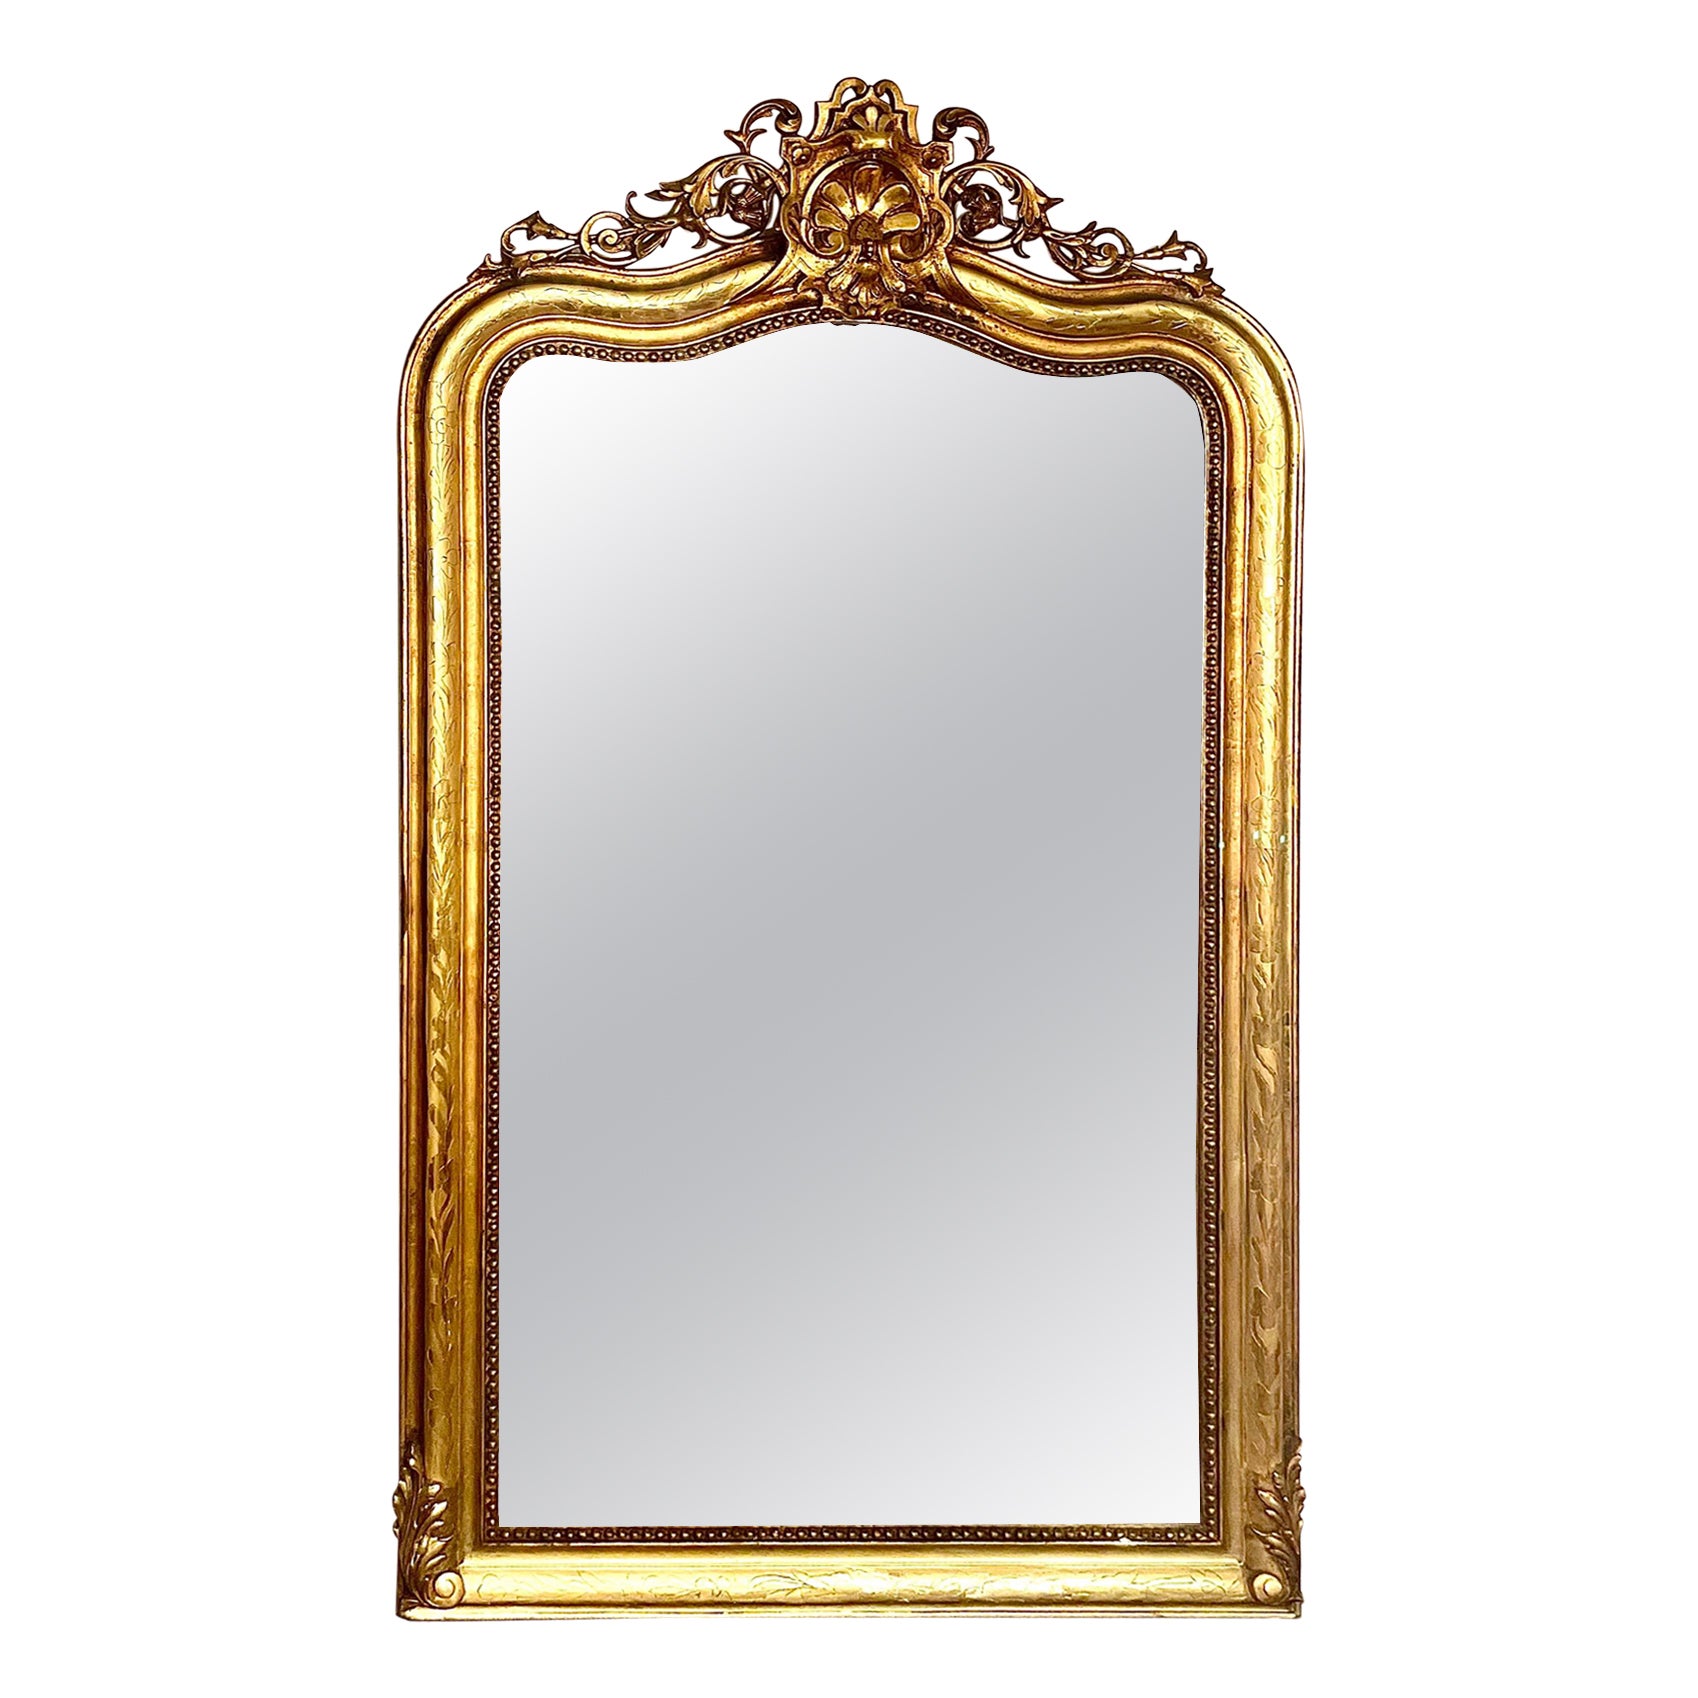 Miroir en bois doré orné des années 1830